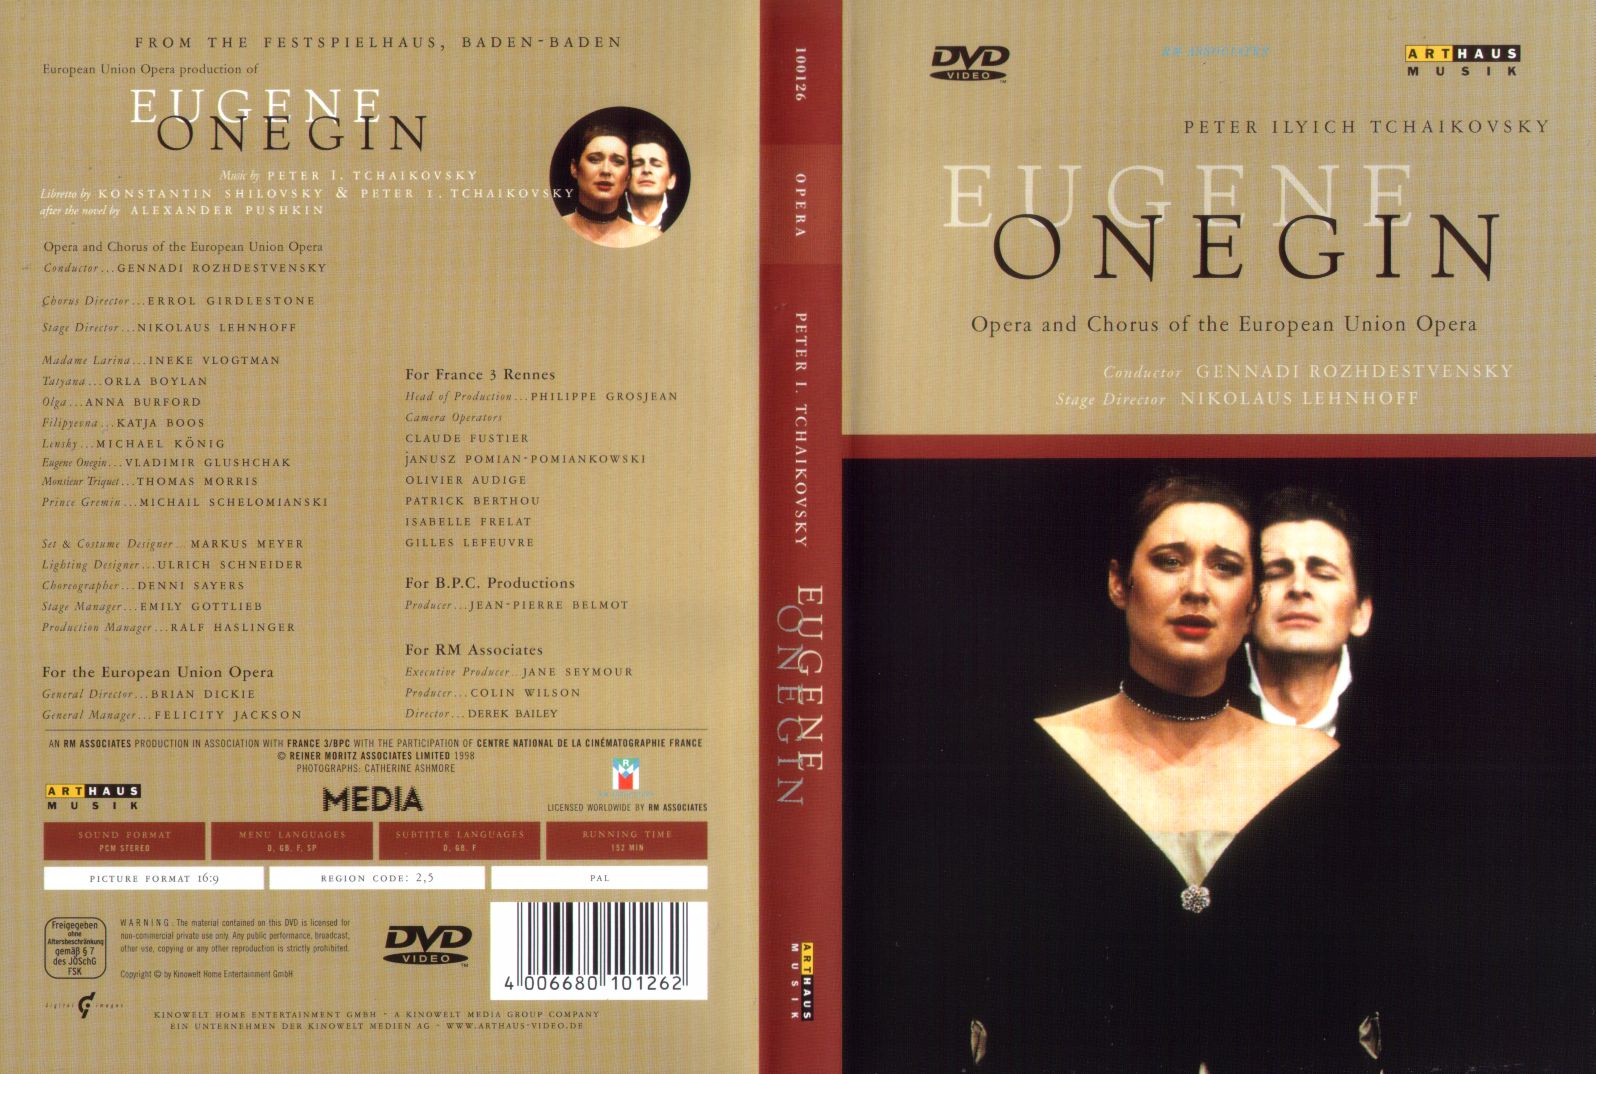 Jaquette DVD Onegin (opra)